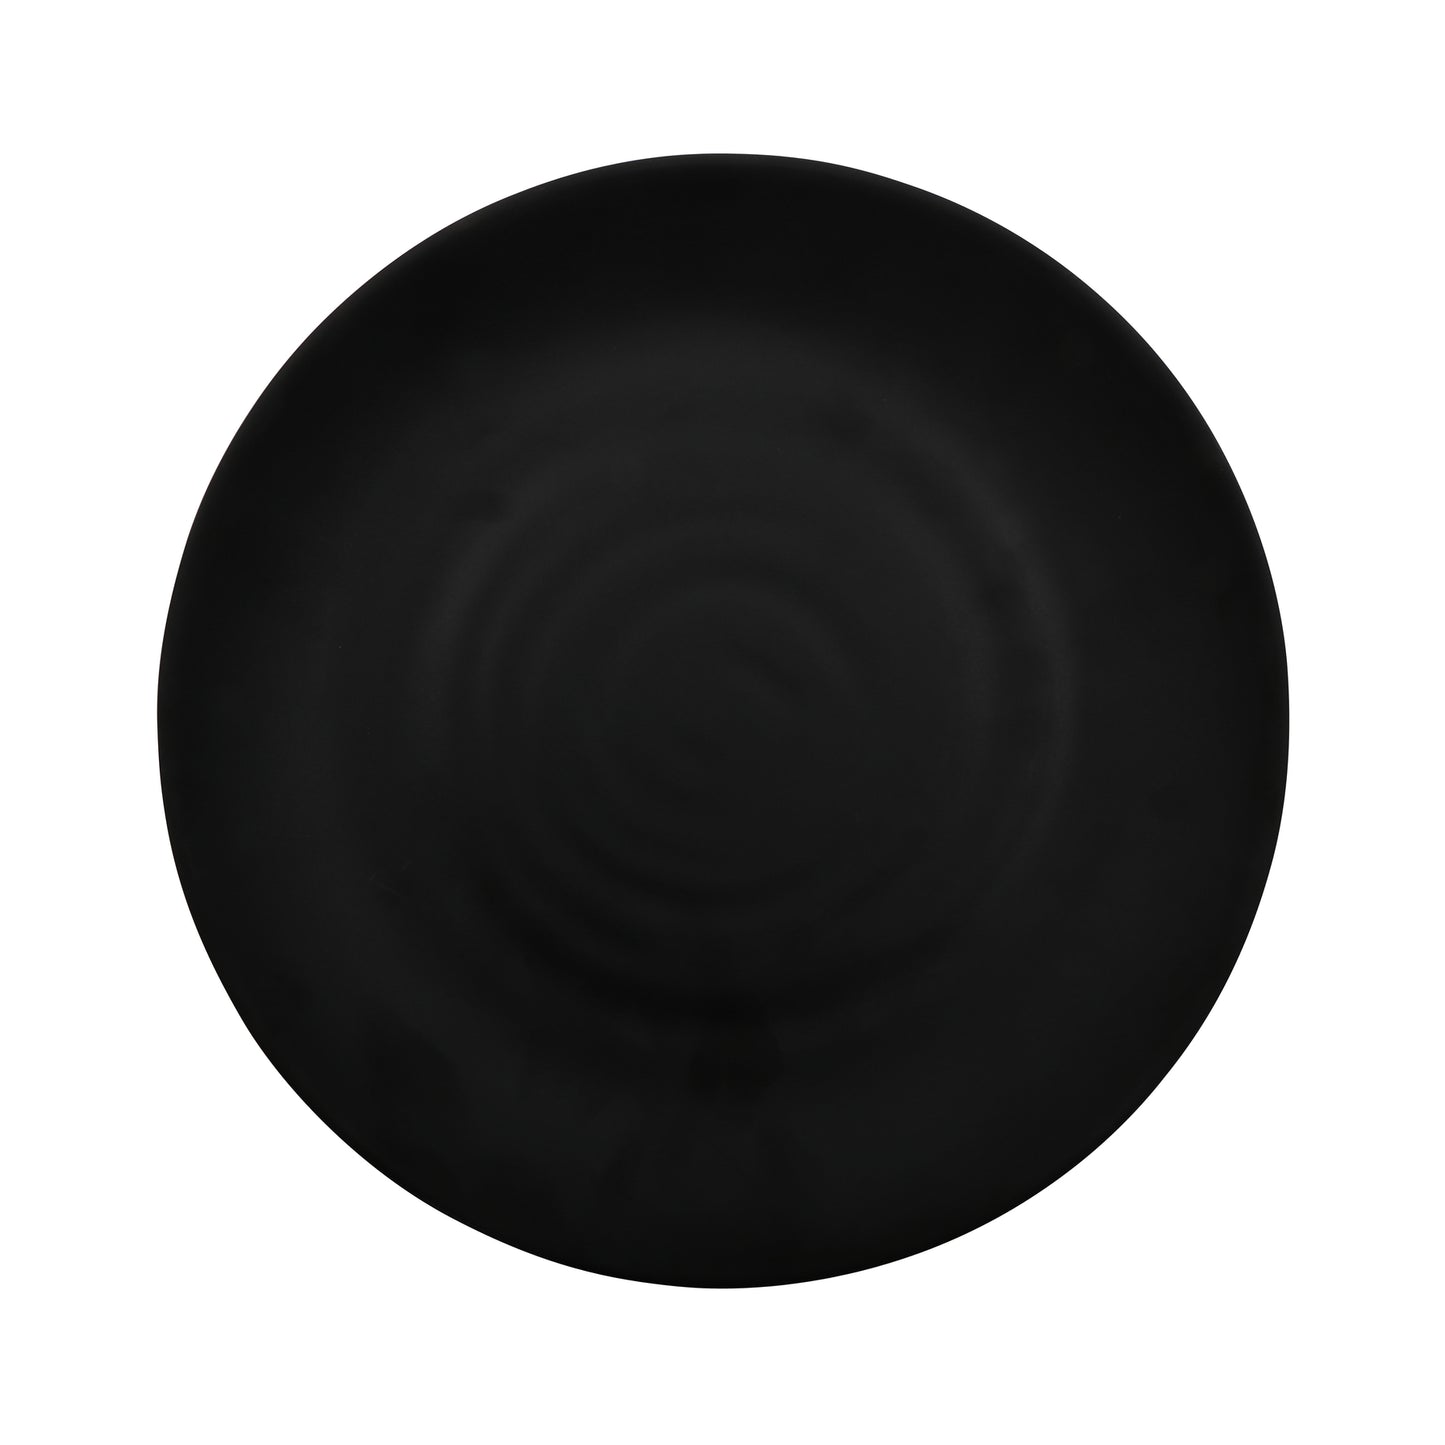 12" Melamine, Black, Round Dinner/Entree Plate, G.E.T. Nara (12 Pack)